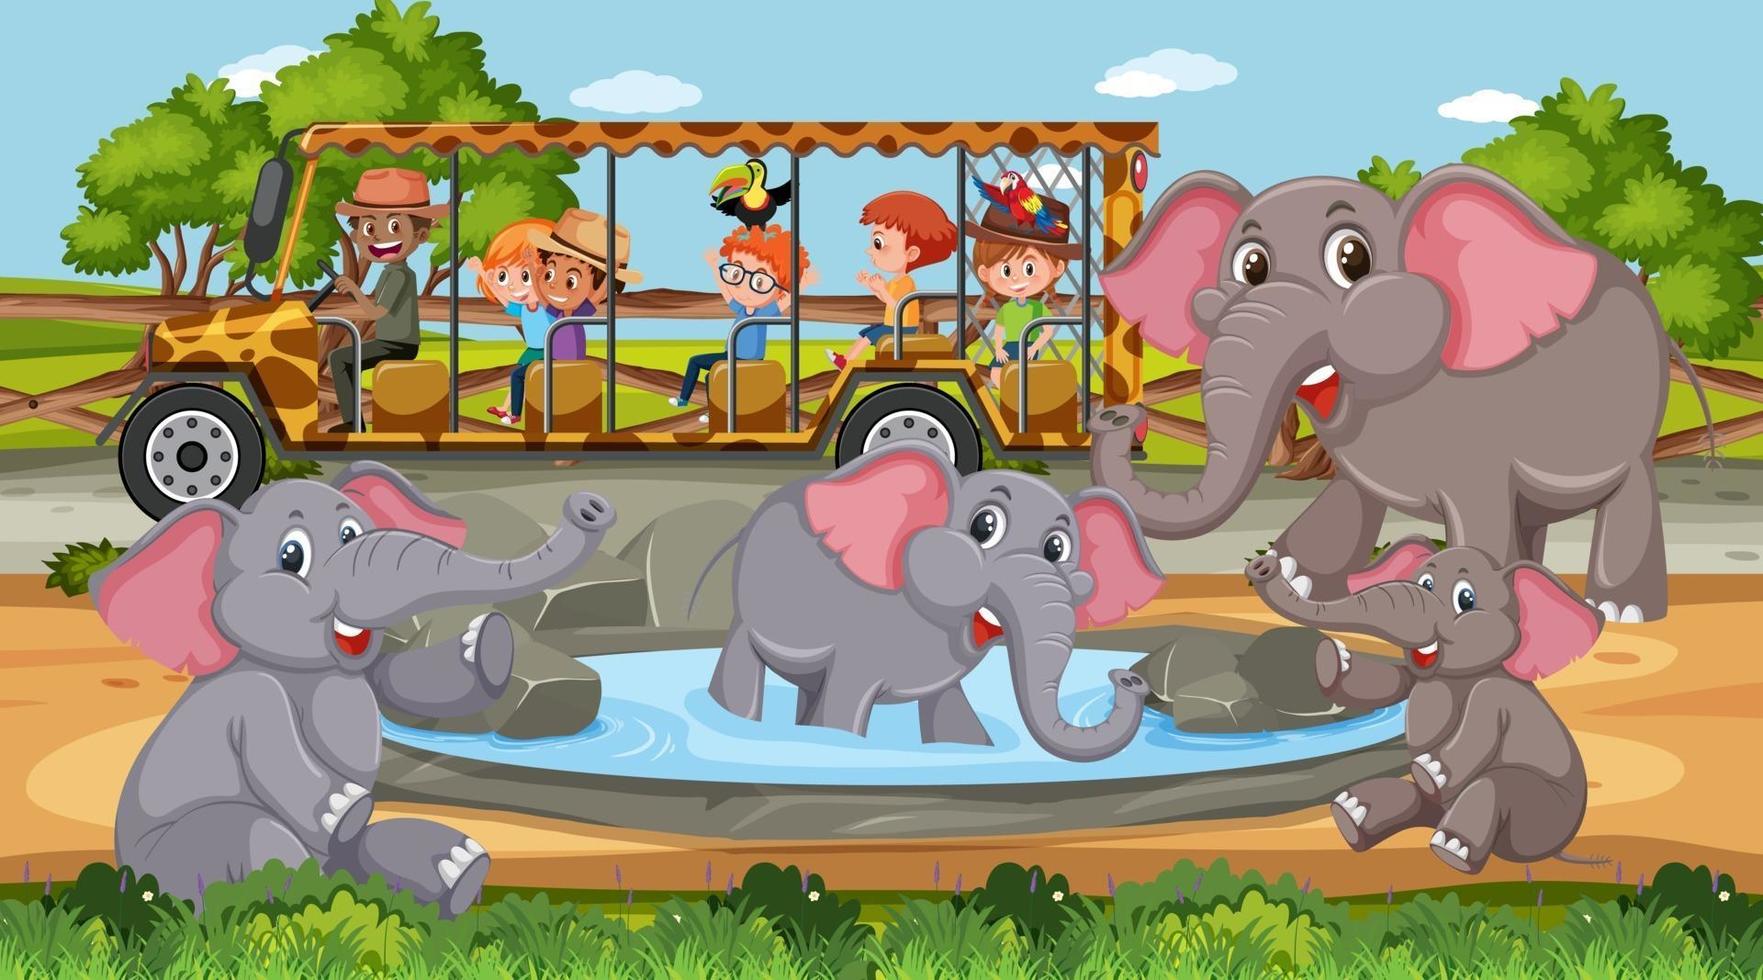 groupe d'éléphants dans une scène de safari pendant la journée avec des enfants dans la voiture de tourisme vecteur